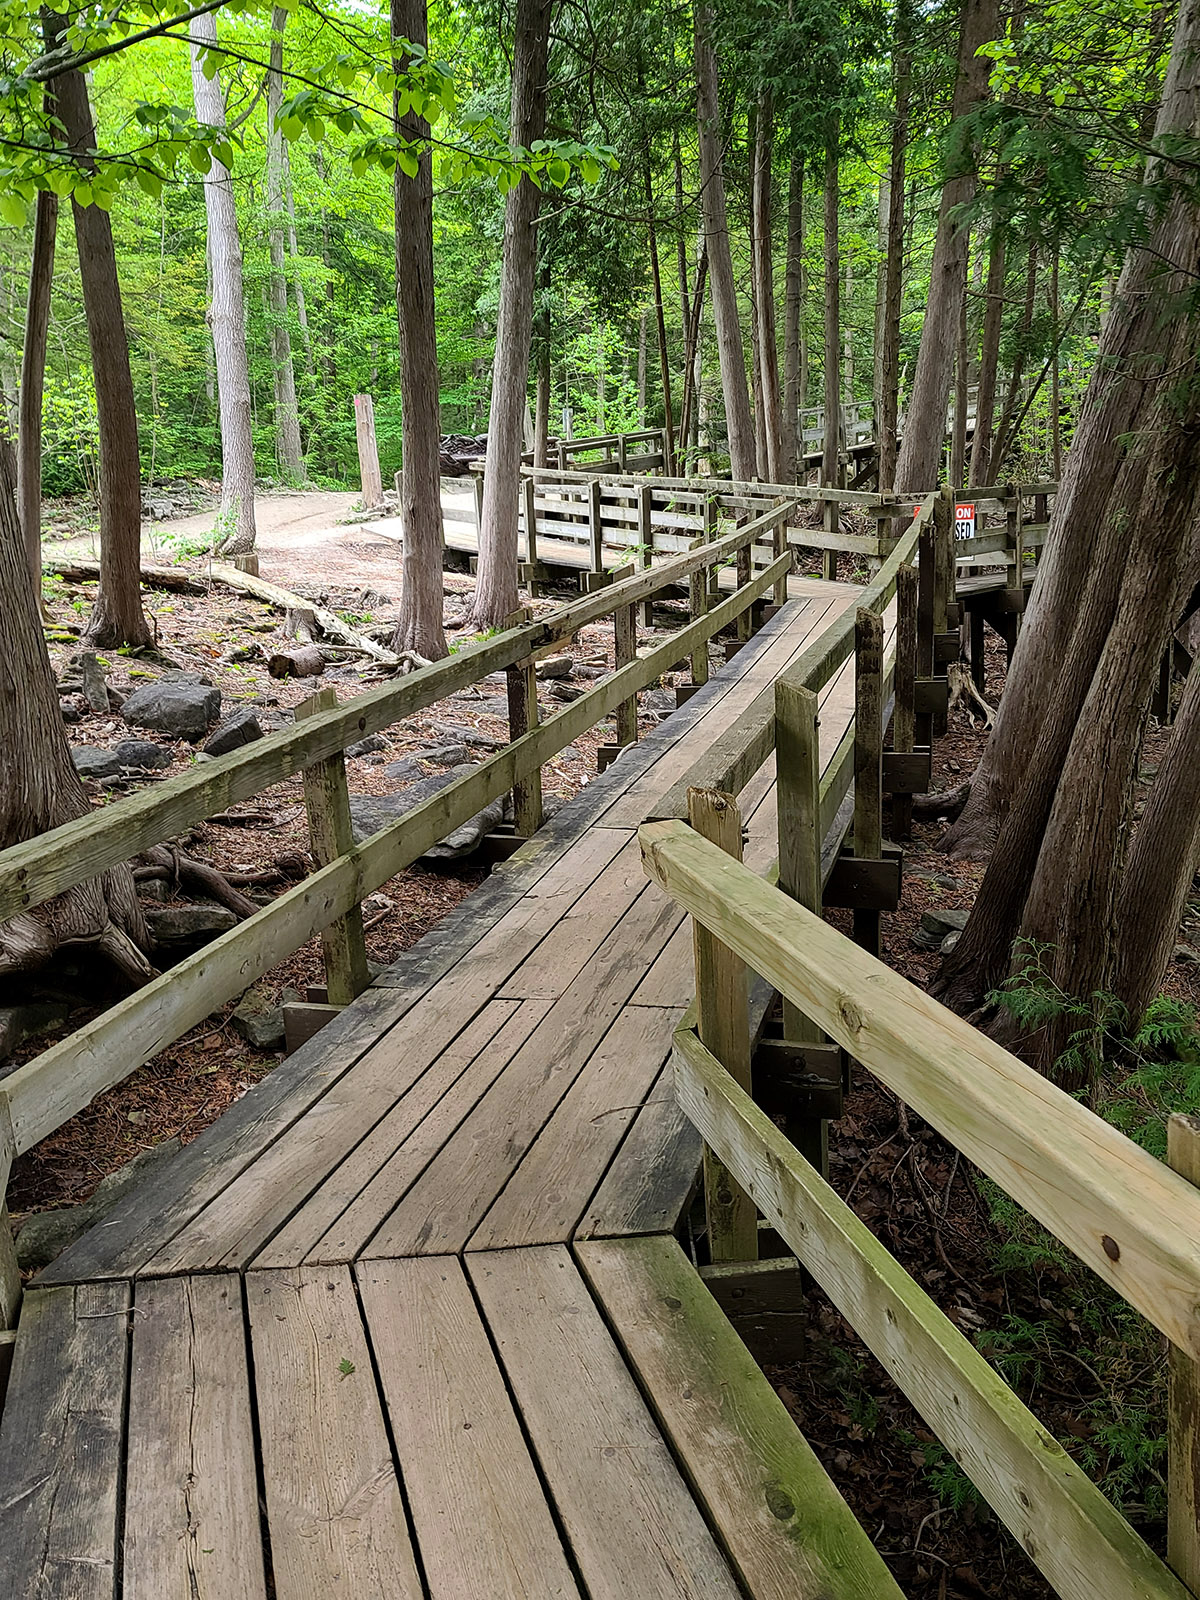 A boardwalk winding through a forest.